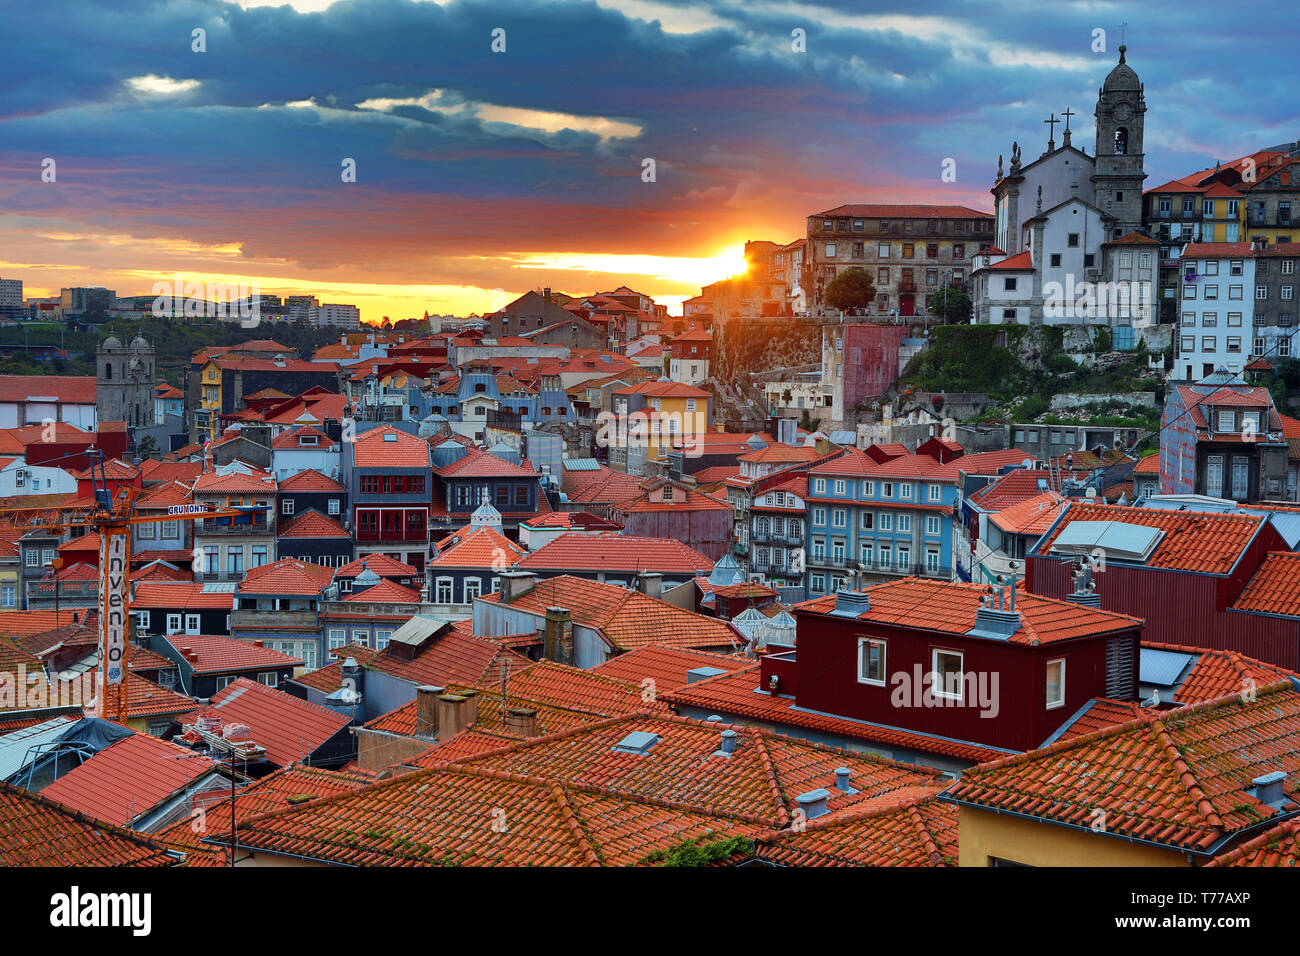 Sonnenuntergang über den Dächern der Stadt von Porto, Portugal  Stockfotografie - Alamy